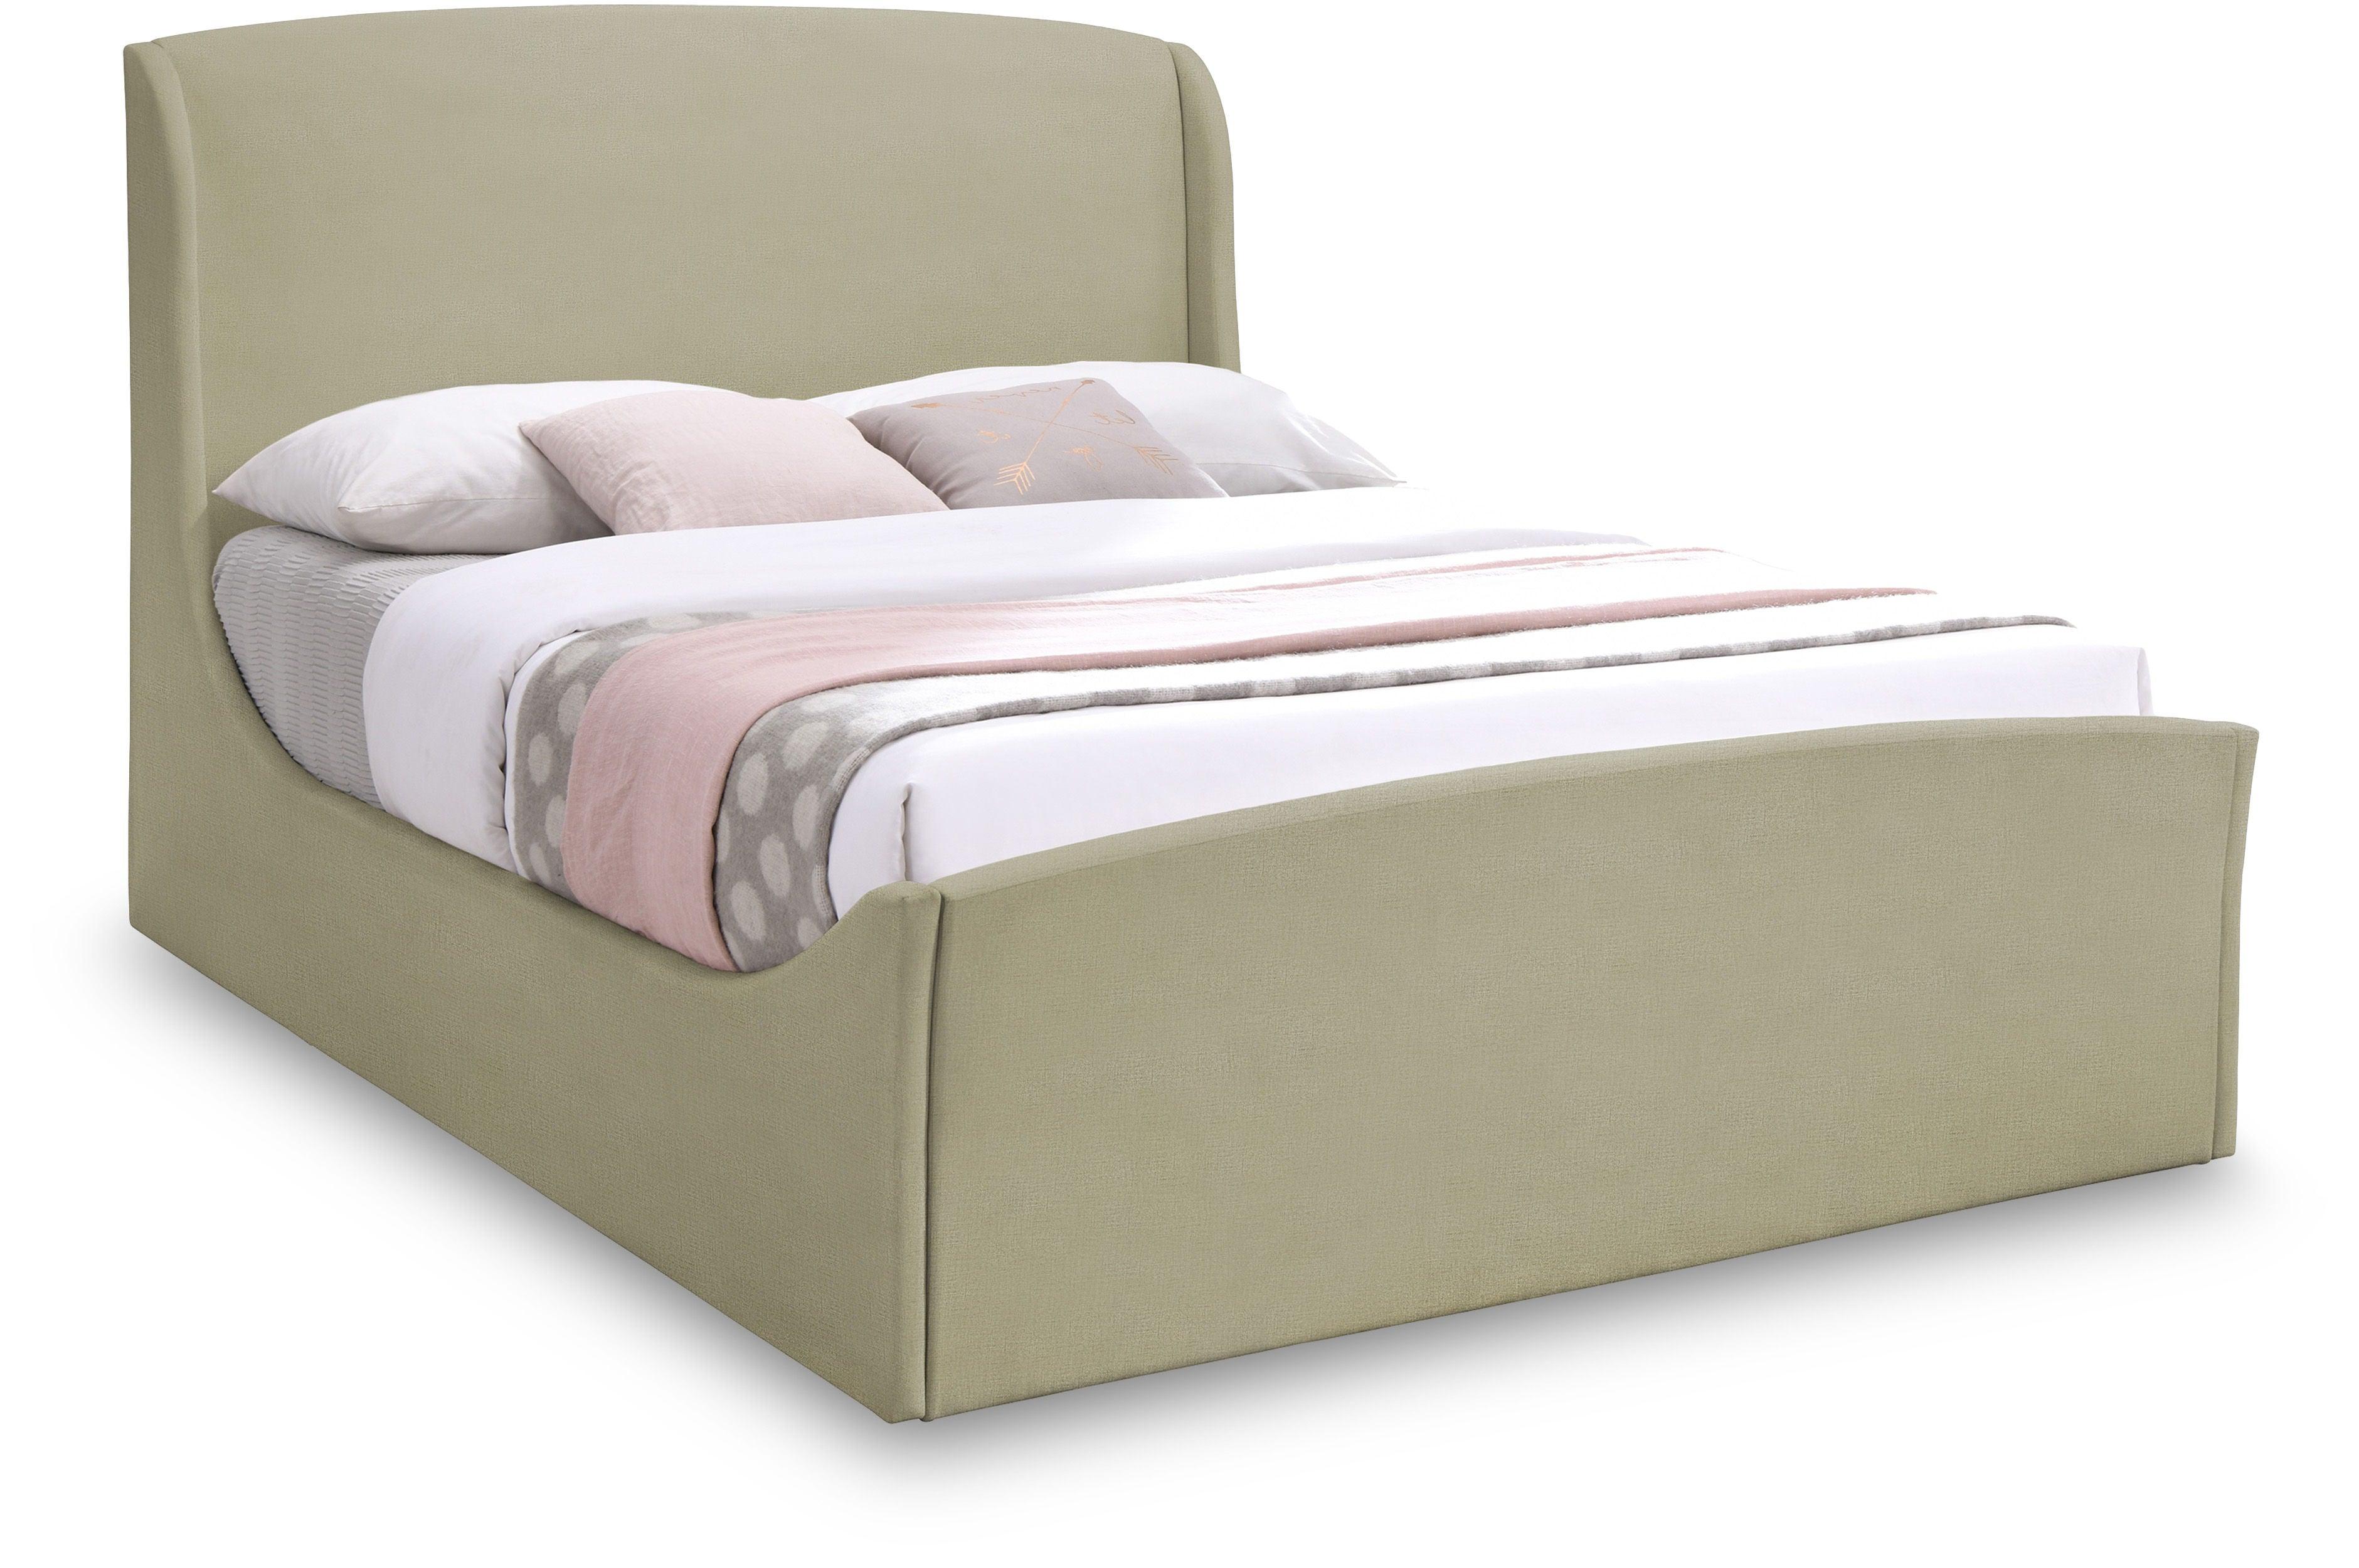 Meridian Furniture - Tess - Queen Bed - Beige - 5th Avenue Furniture